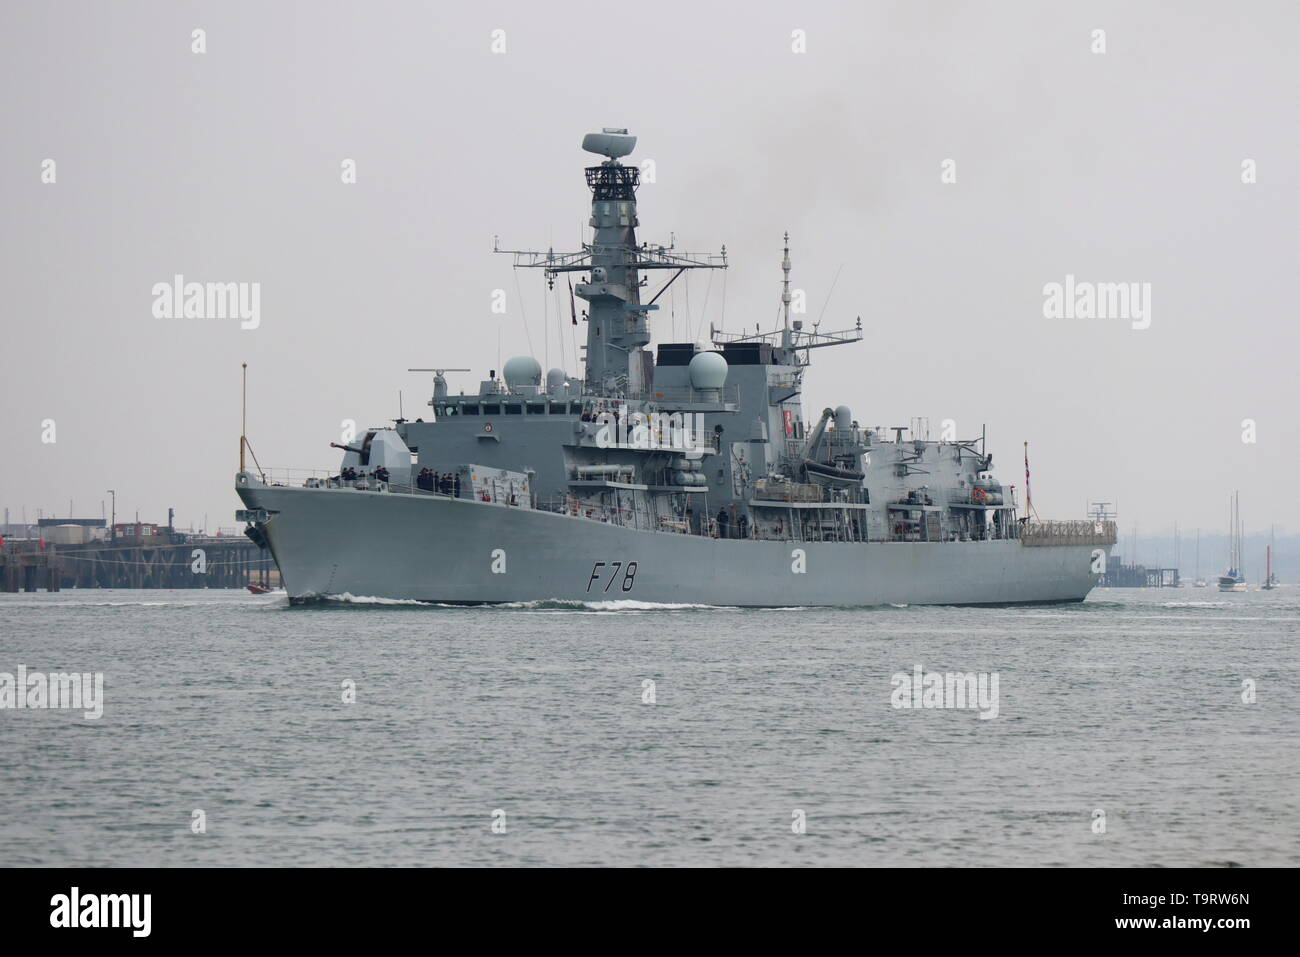 La frégate de la Marine royale HMS KENT navigue de Portsmouth, au Royaume-Uni, pour la Baltique où elle fera partie de la Force expéditionnaire interarmées de l'OTAN Banque D'Images